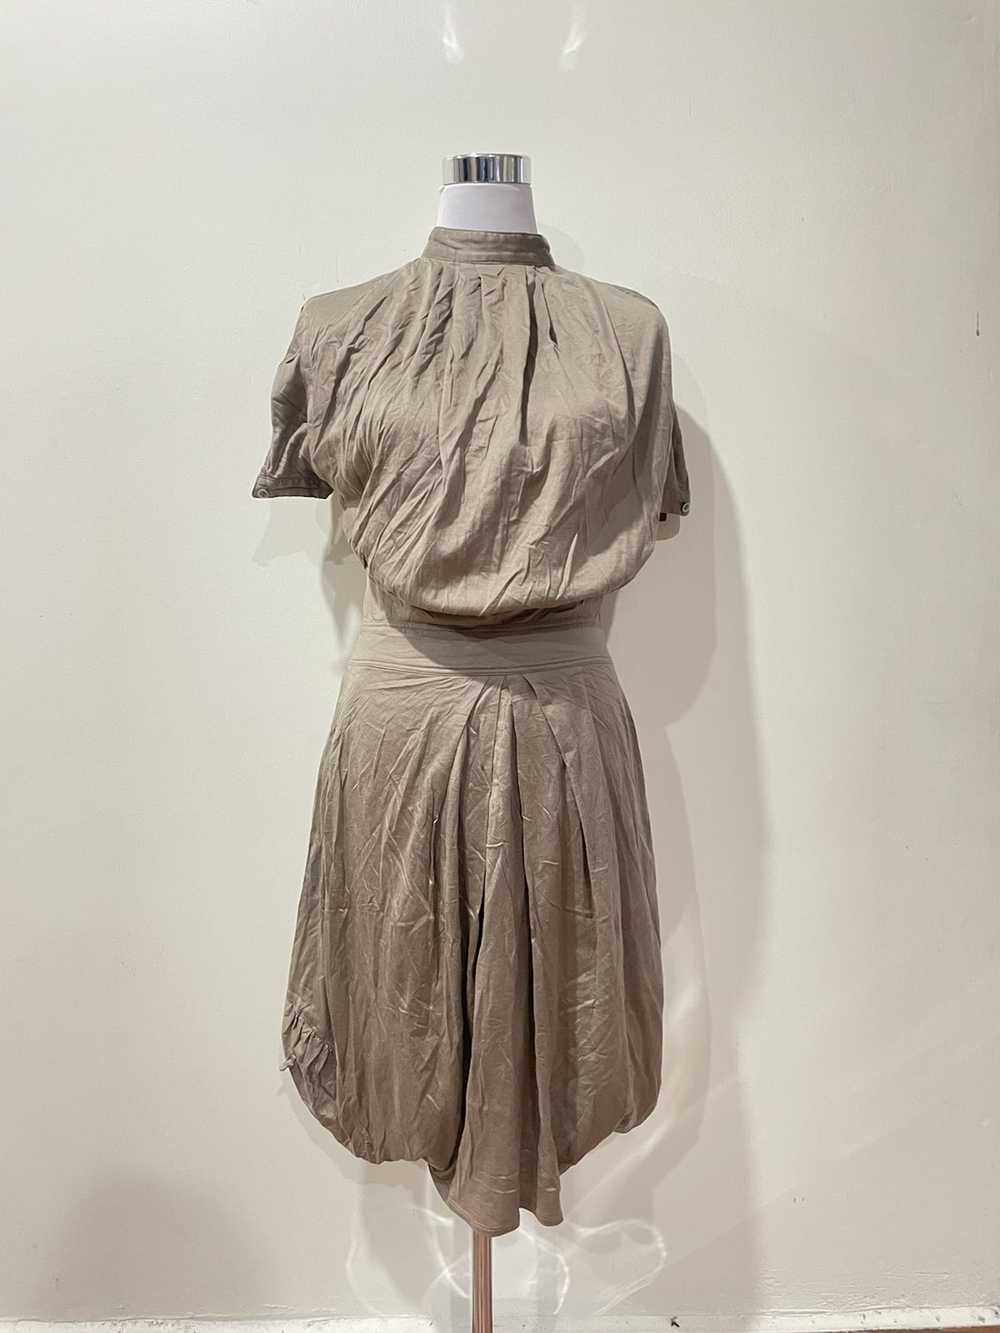 Issey Miyake × Mercibeaucoup Mercibeaucoup Dress - image 1